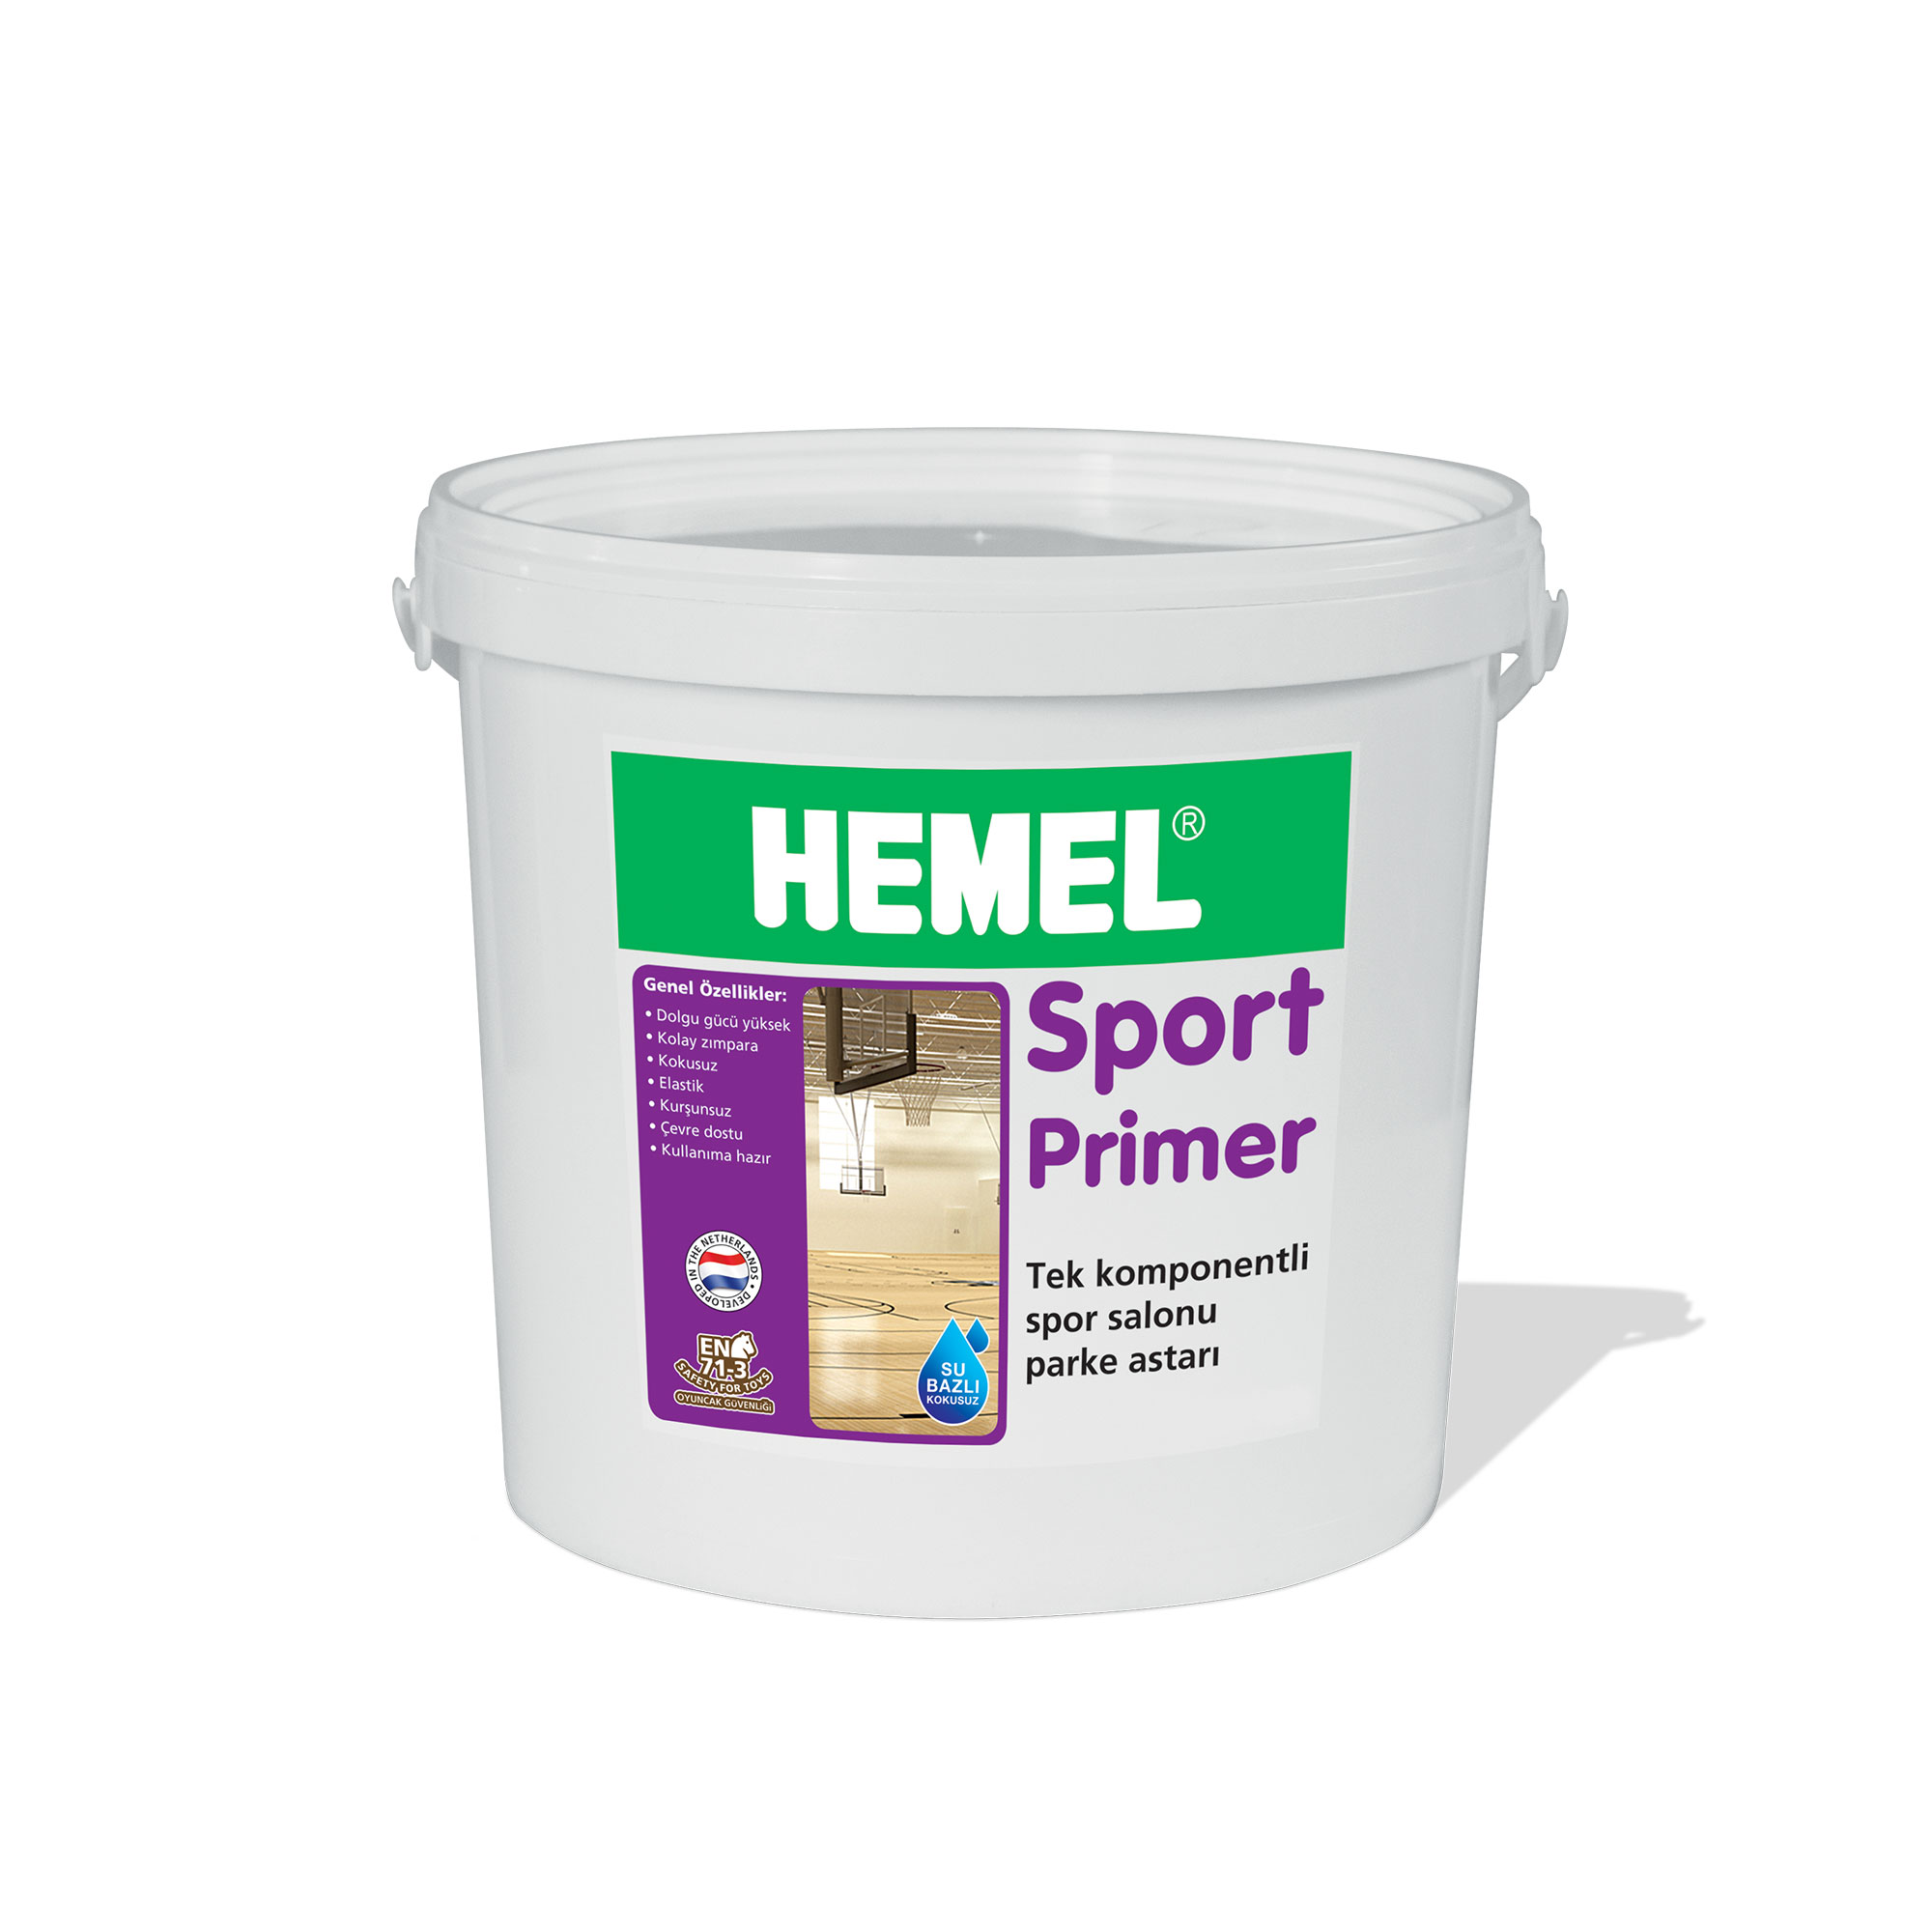 HEMEL Sport Primer – Spor Salonu Parke Astarı